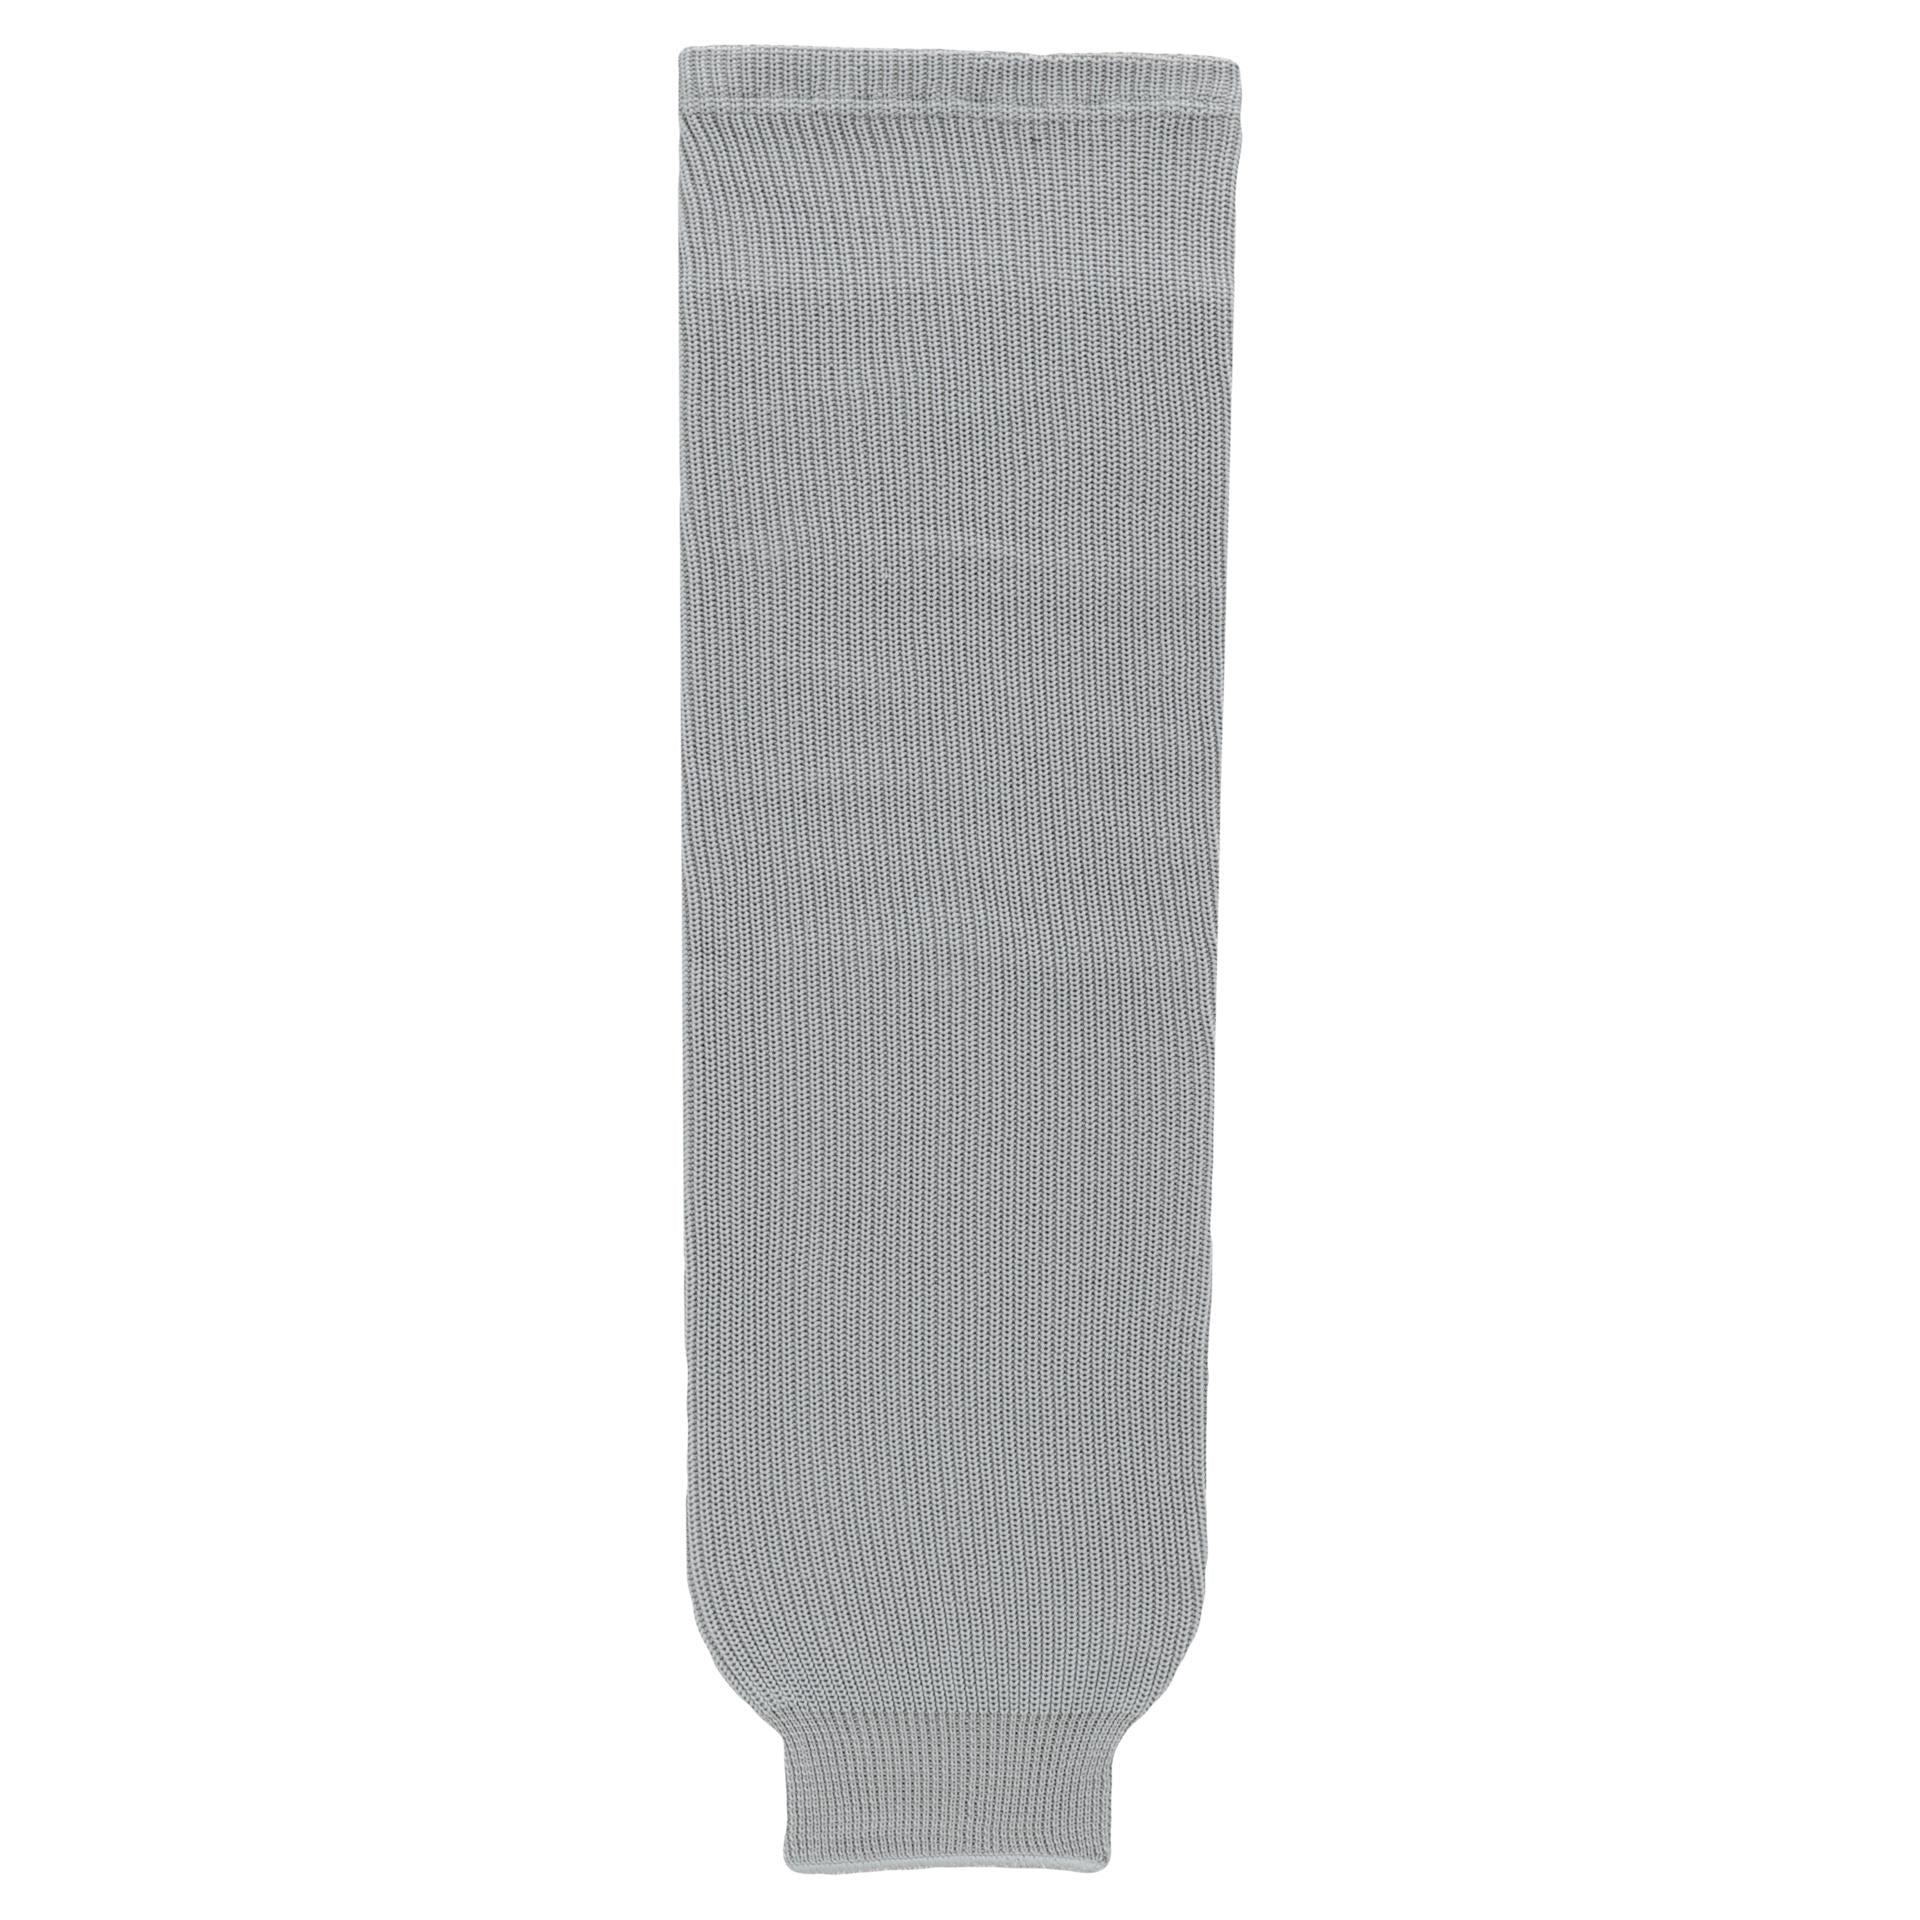 HS630-012 Grey Hockey Socks (Pair)